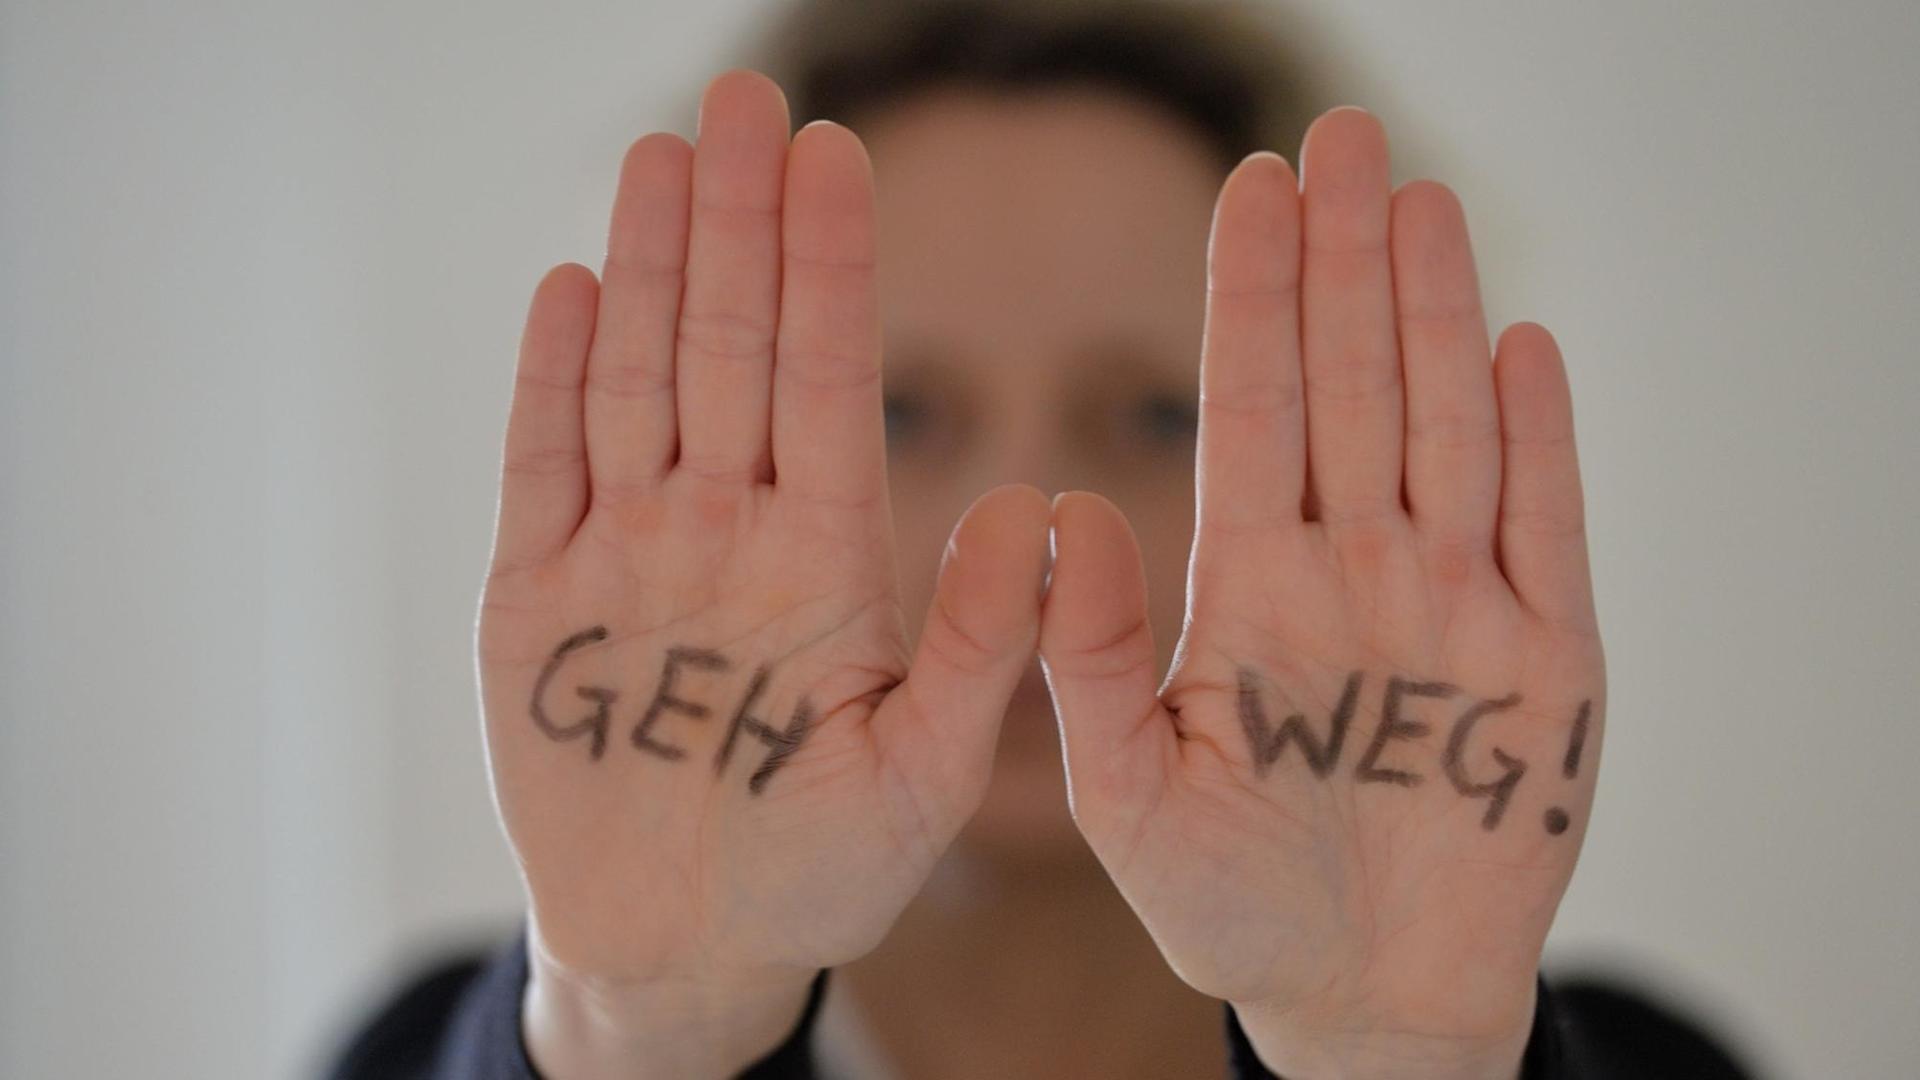 Symbolfoto: Eine Frau steht mit ausgestreckten Armen da, auf ihren Händen steht geschrieben "Geh weg!" aufgenommen am 23.02.2016 in Osterode.